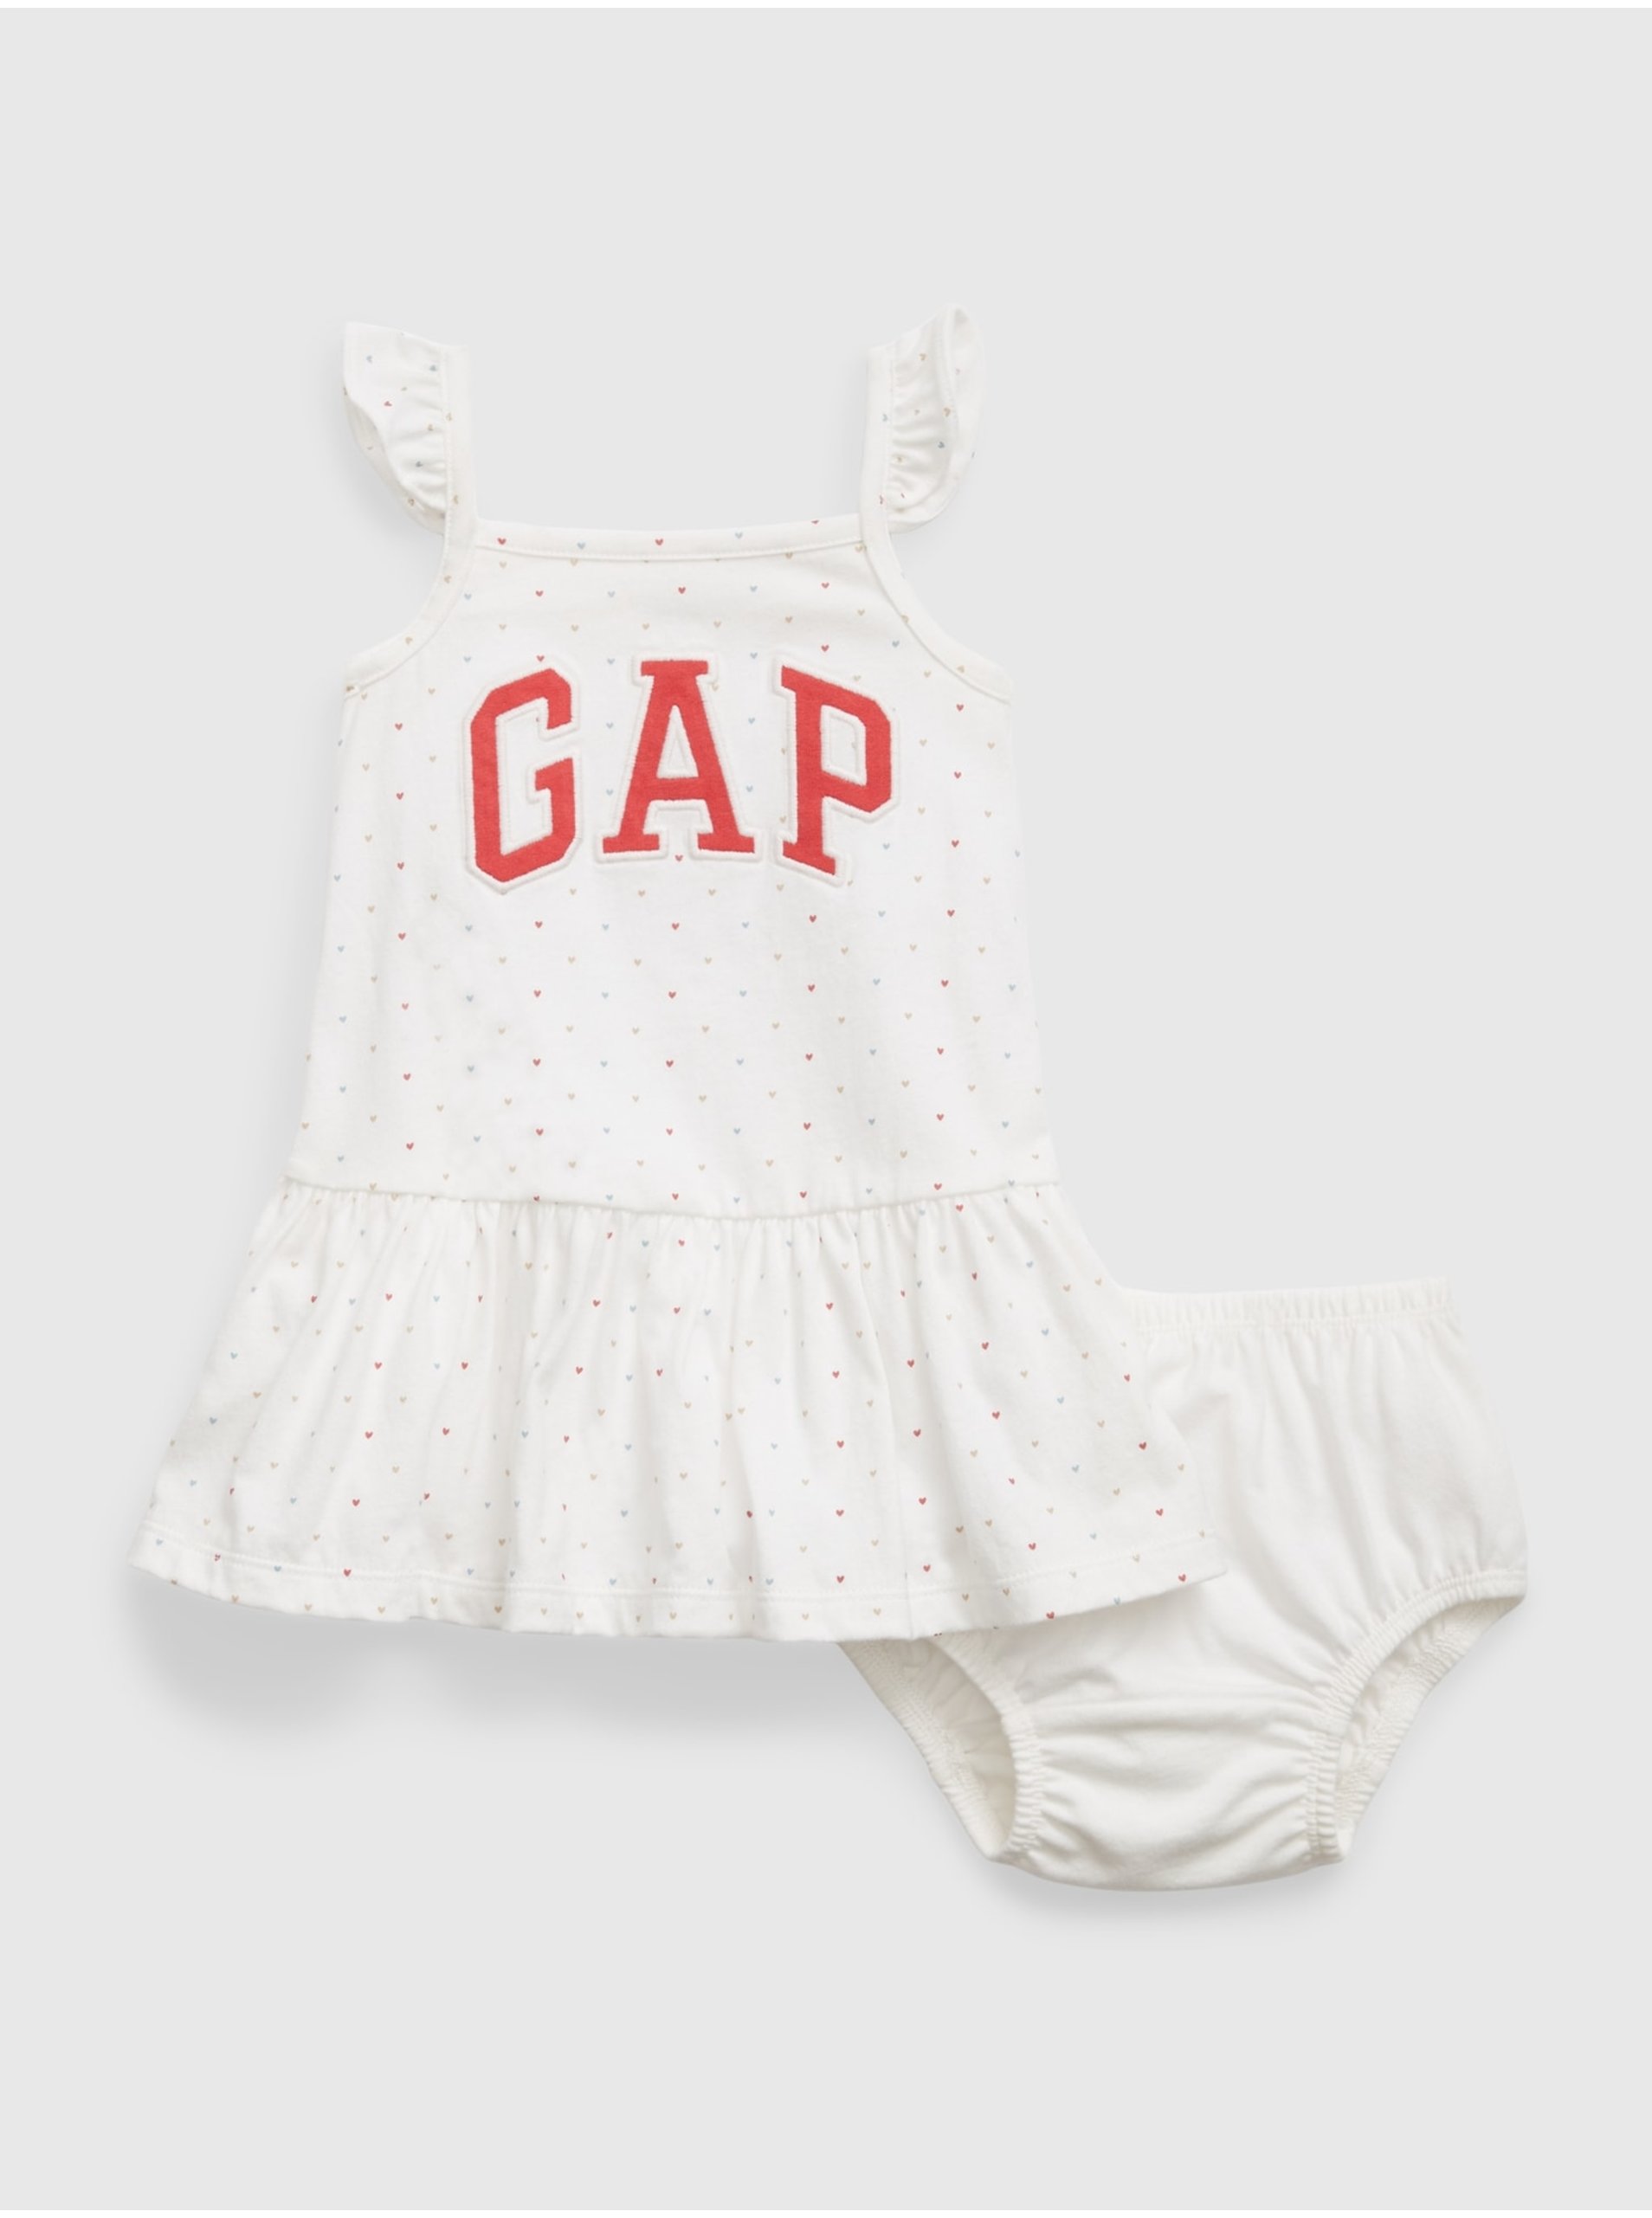 Lacno Biele dievčenské šaty s logom GAP